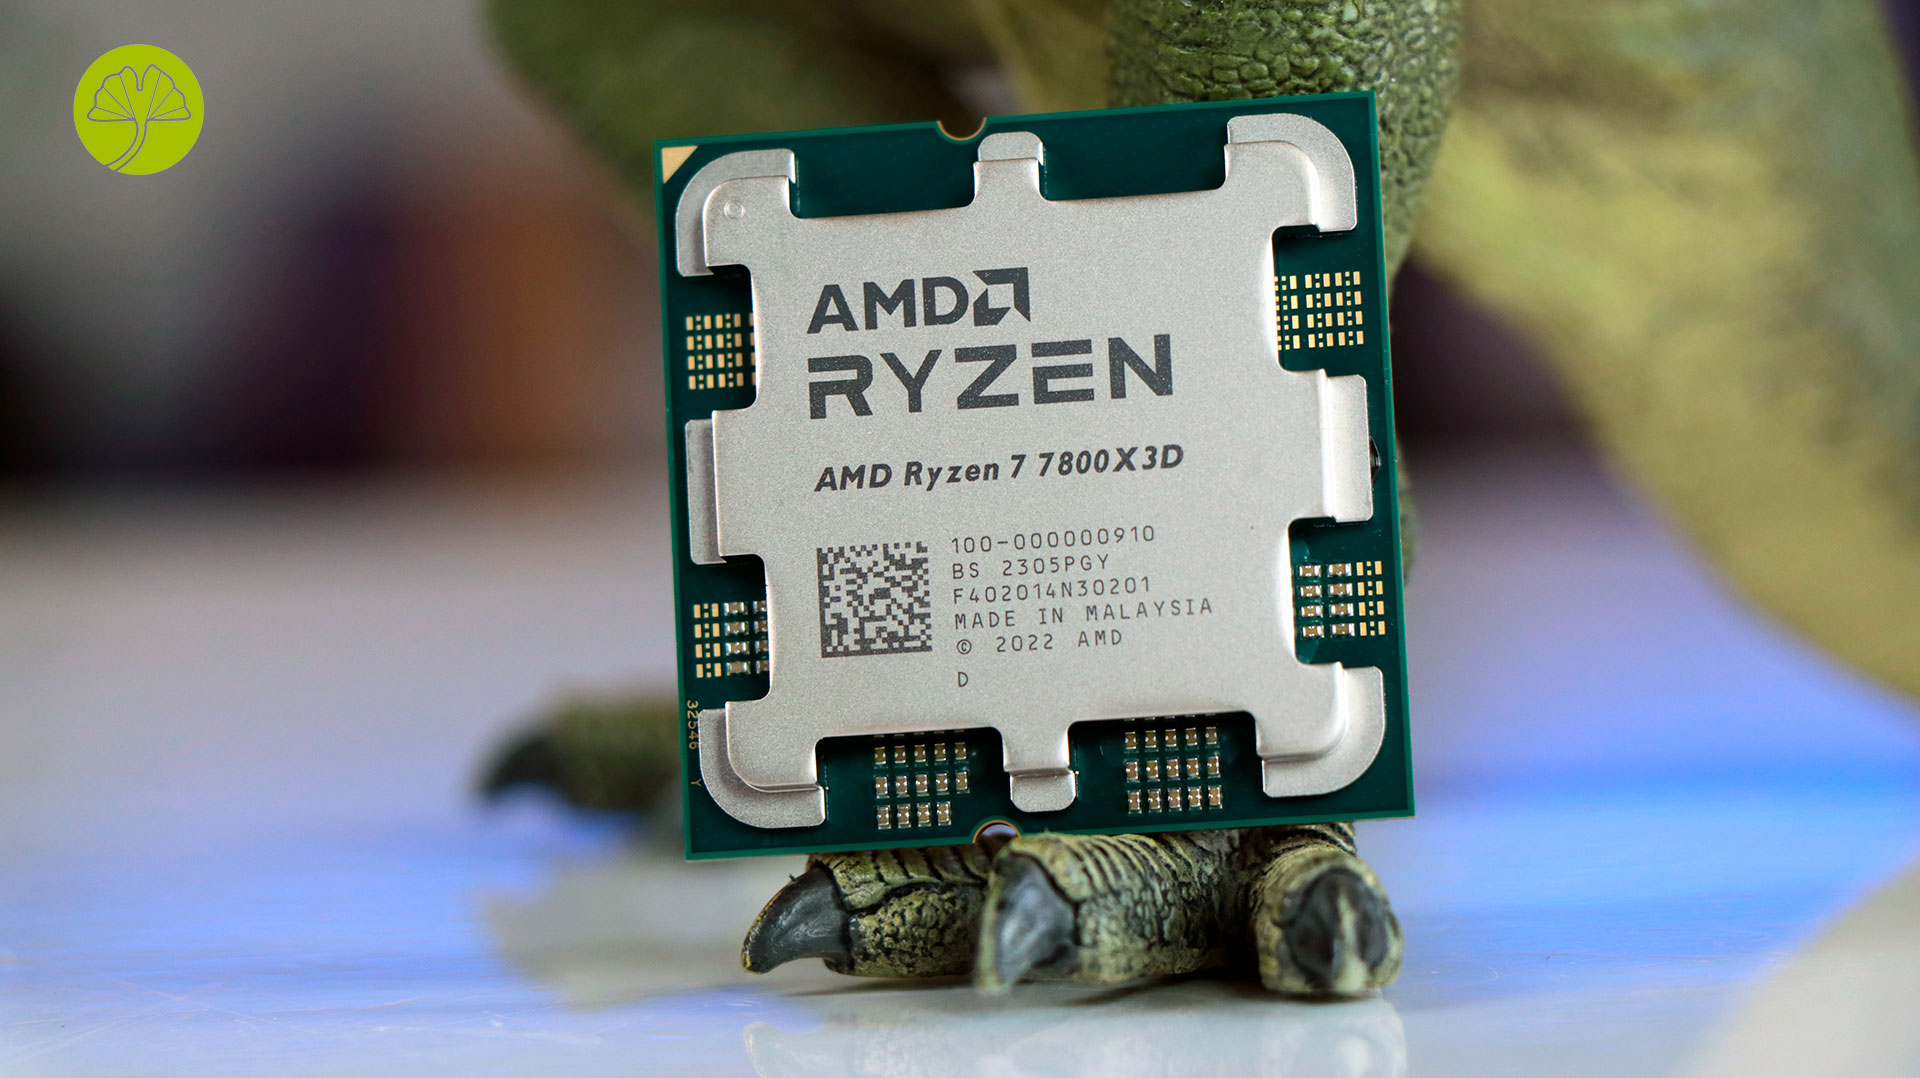 Amd ryzen 7 7800x3d купить. Ryzen 7 7800x3d. AMD 7800x3d OEM. Ryzen 5 5500 под крышкой скальпирование. Рамка для скальпированного r7 7800x3d.